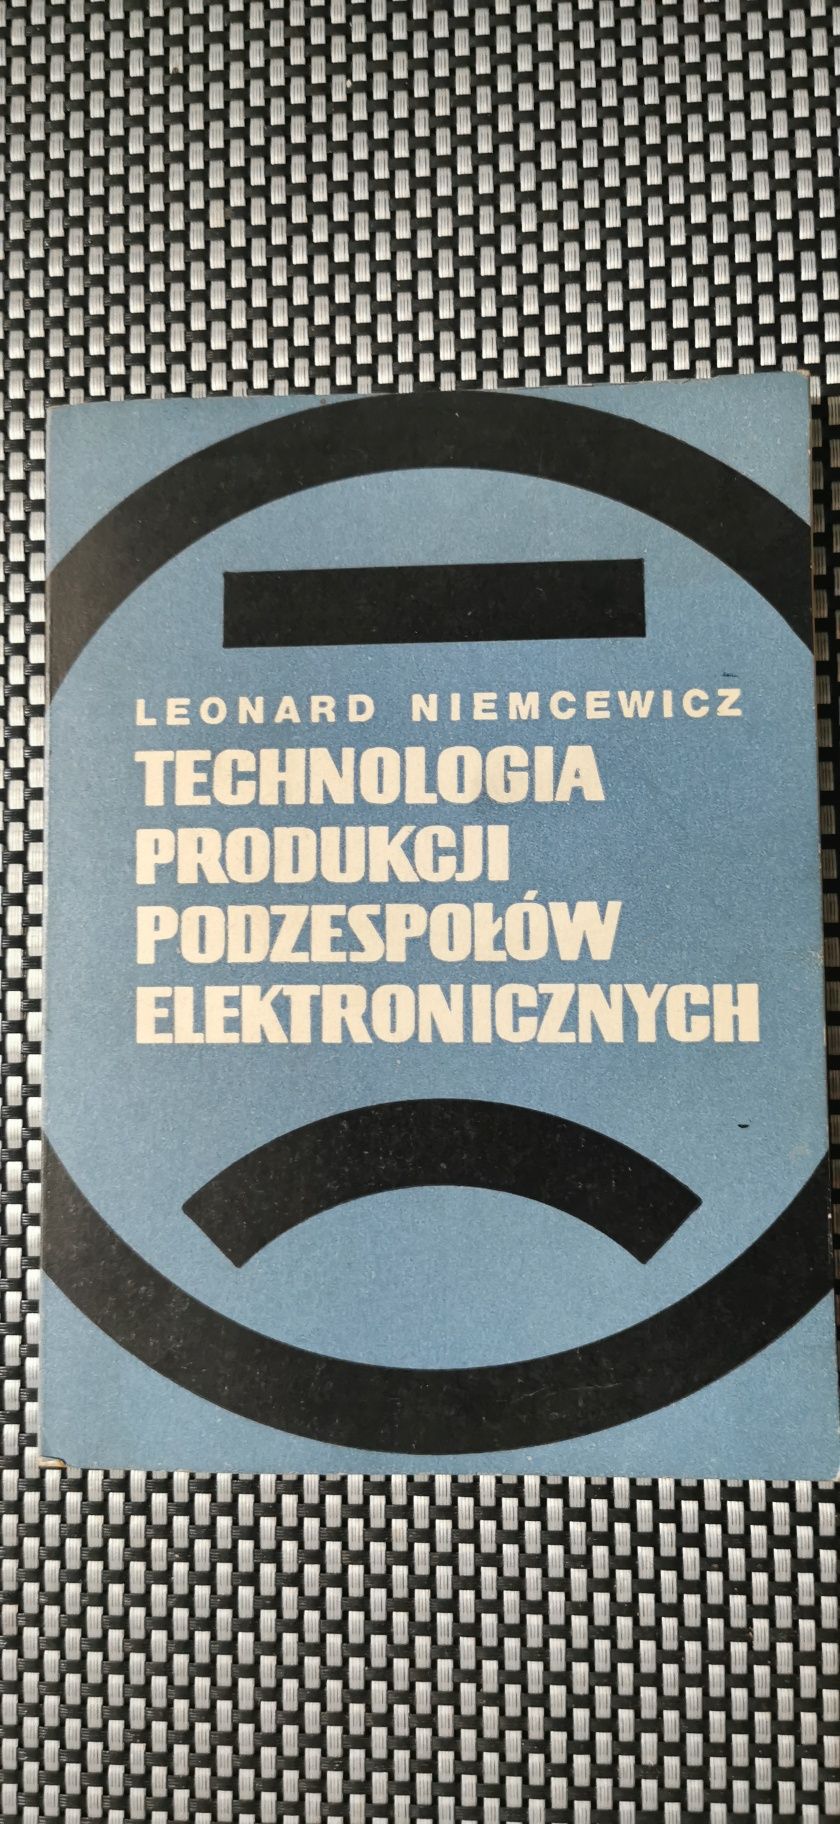 Technologia produkcji podzespołów elektronicznych
Leonard Niemcewicz